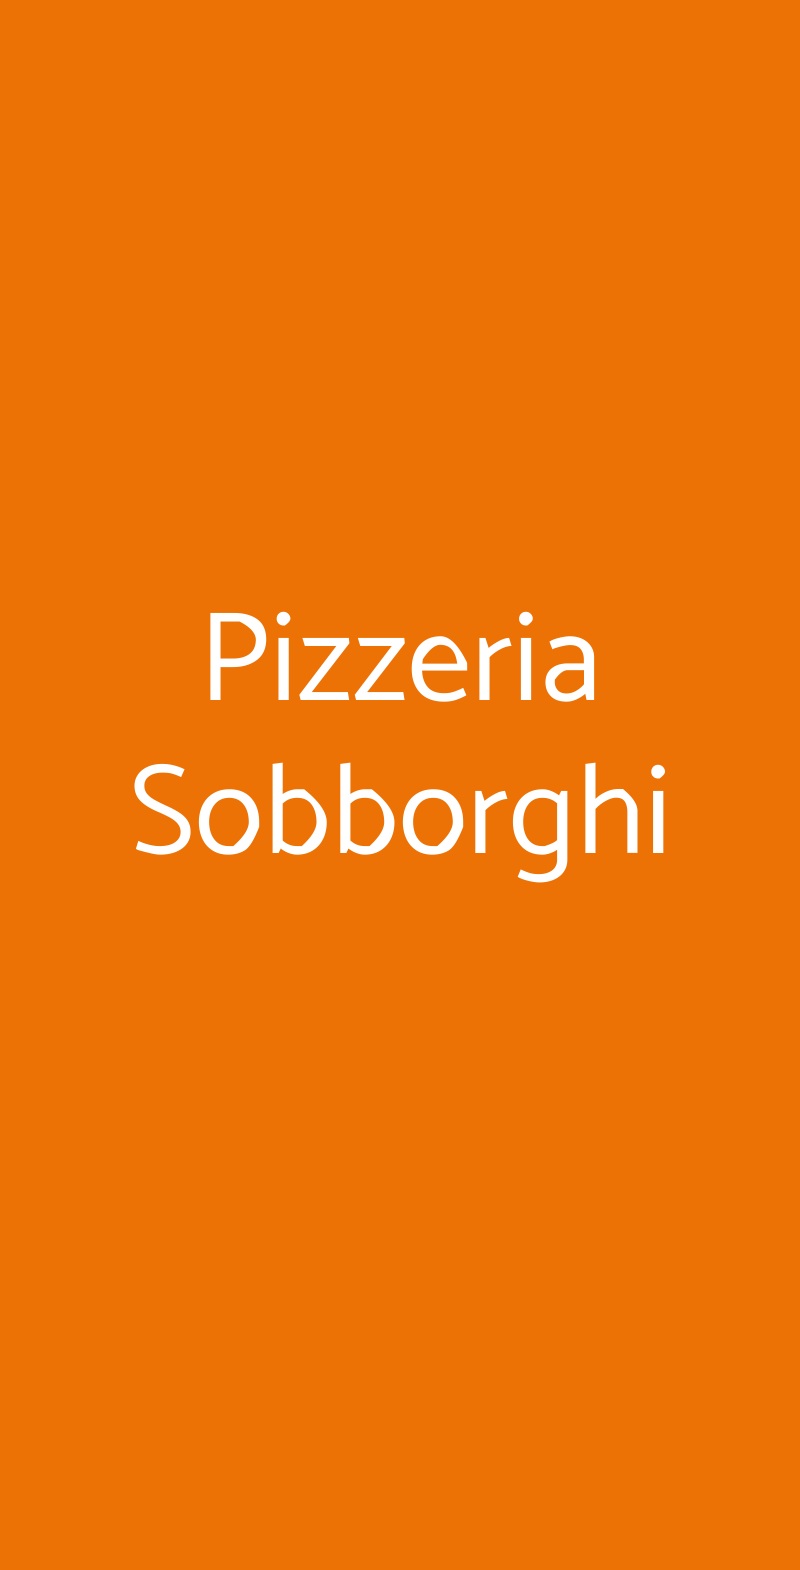 Pizzeria Sobborghi Monza menù 1 pagina